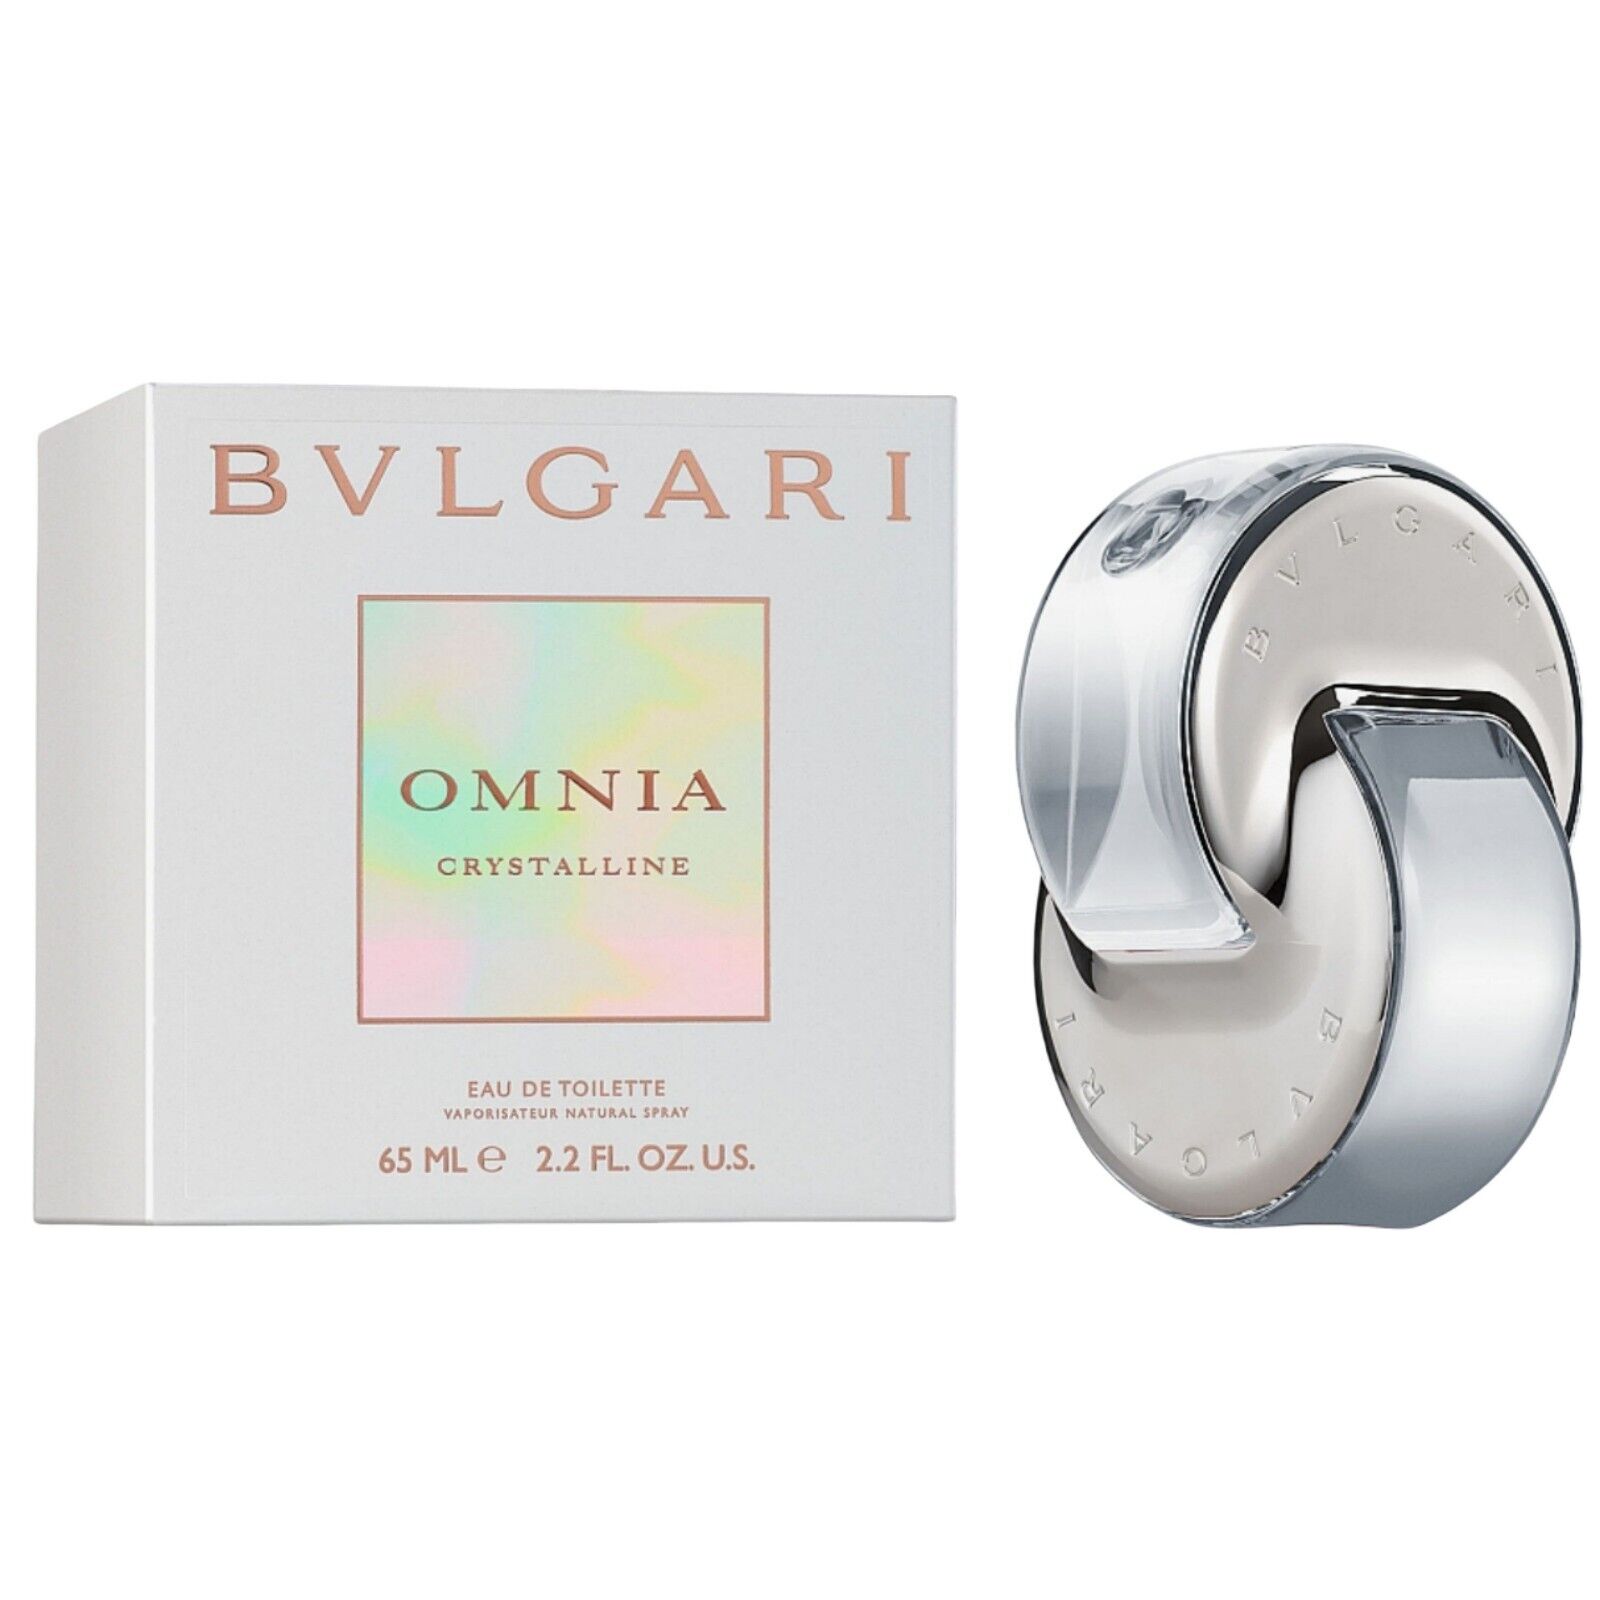 Bvlgari Omnia Crystalline Eau De Toilette For Women EDT Spray 2.2 Oz 65ml